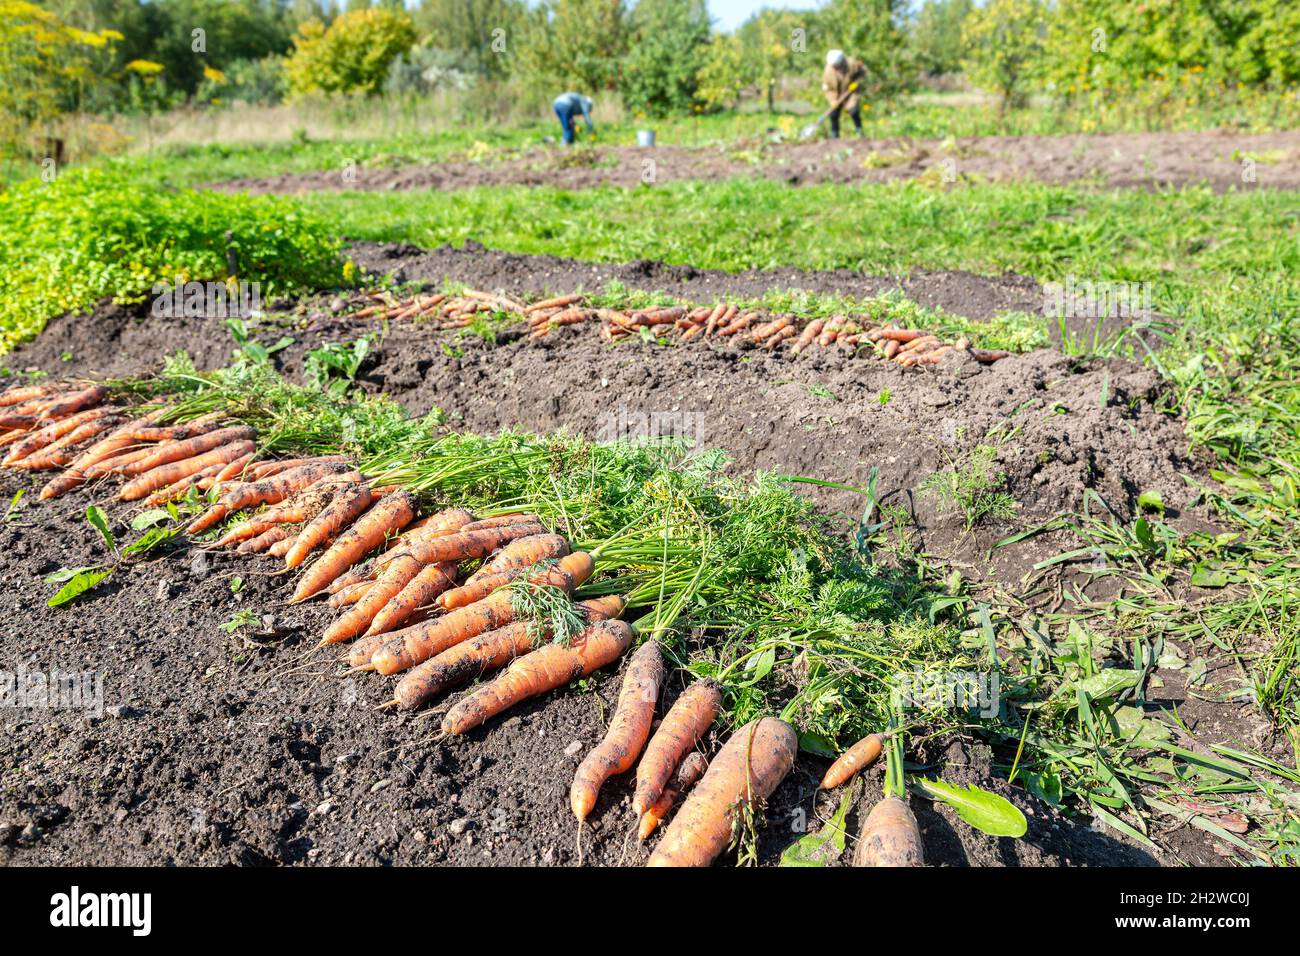 Frisch gegrabene Karotten mit Tops, die auf dem Gartenboden trocknen. Große Bio-saftige ungewaschene Karotten auf einem Feld auf dem Boden Stockfoto